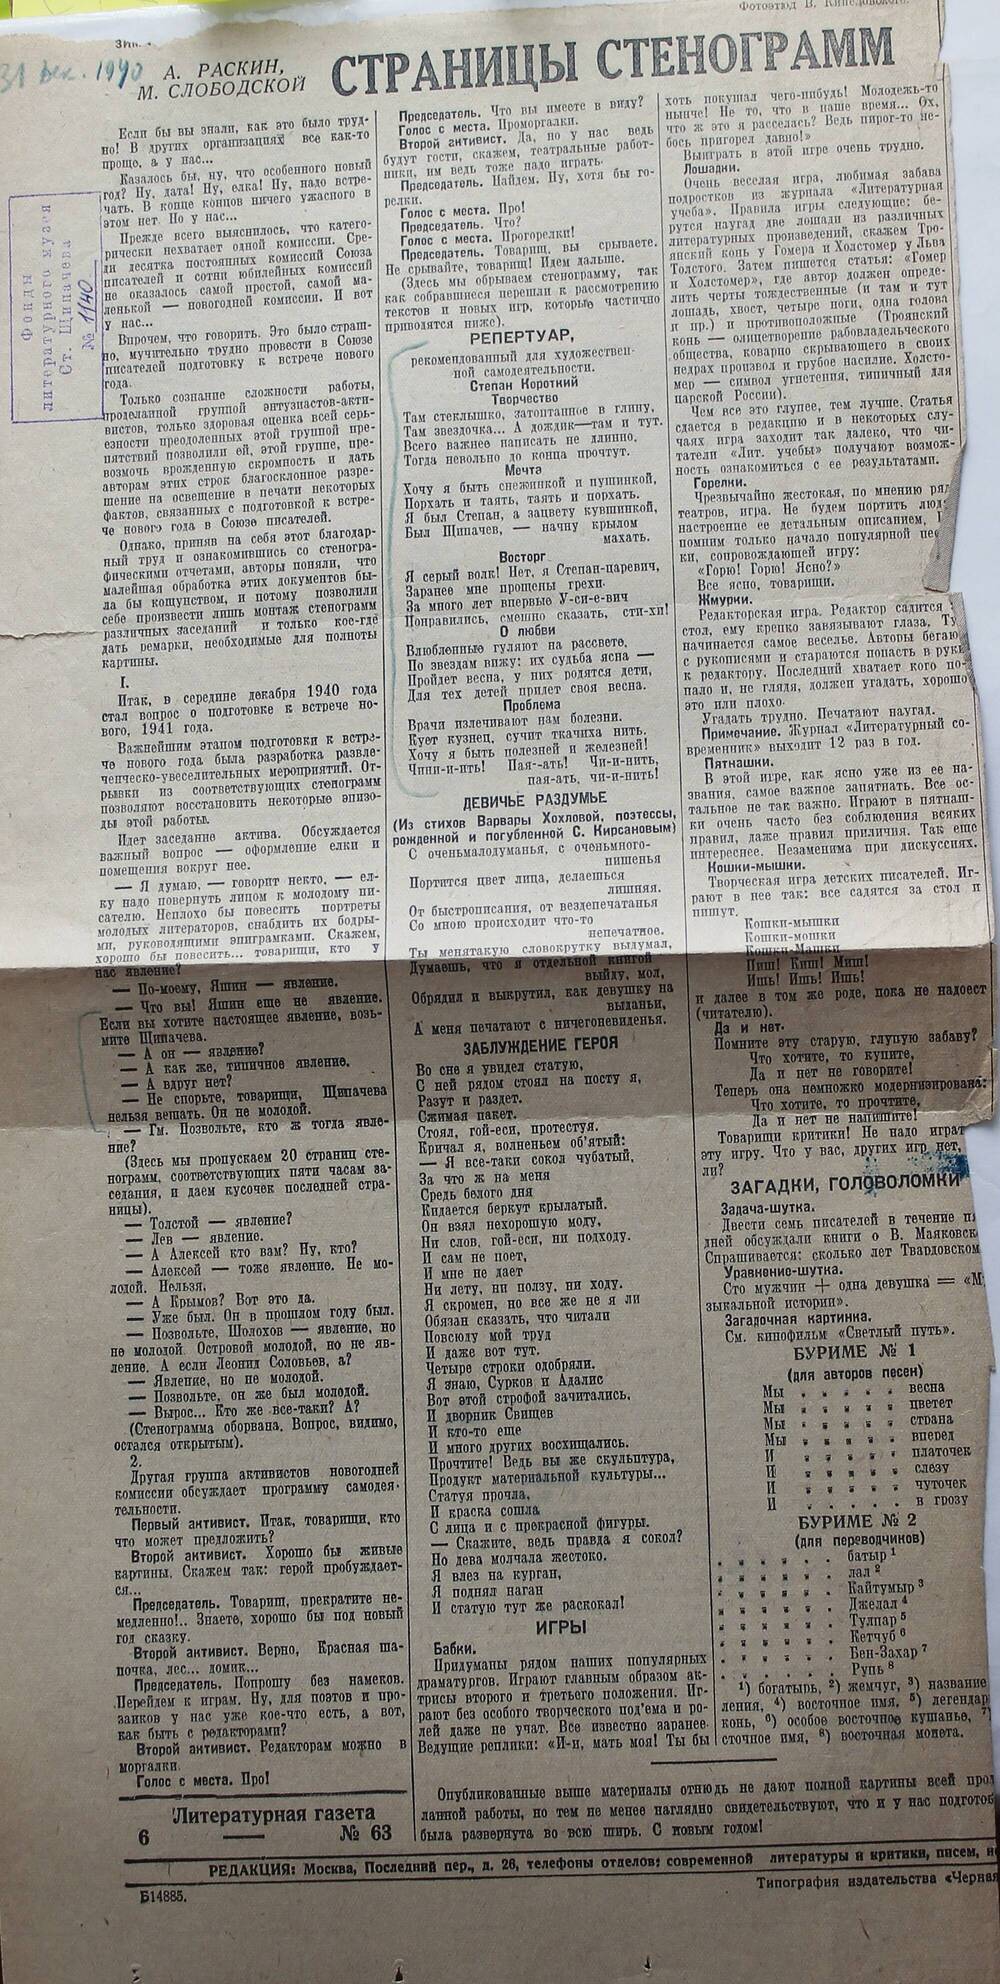 Вырезка из газеты «Красный Крым» № 83 (8202) от 29.04.1949 г. 
«Поэт С. Щипачёв в Крыму».